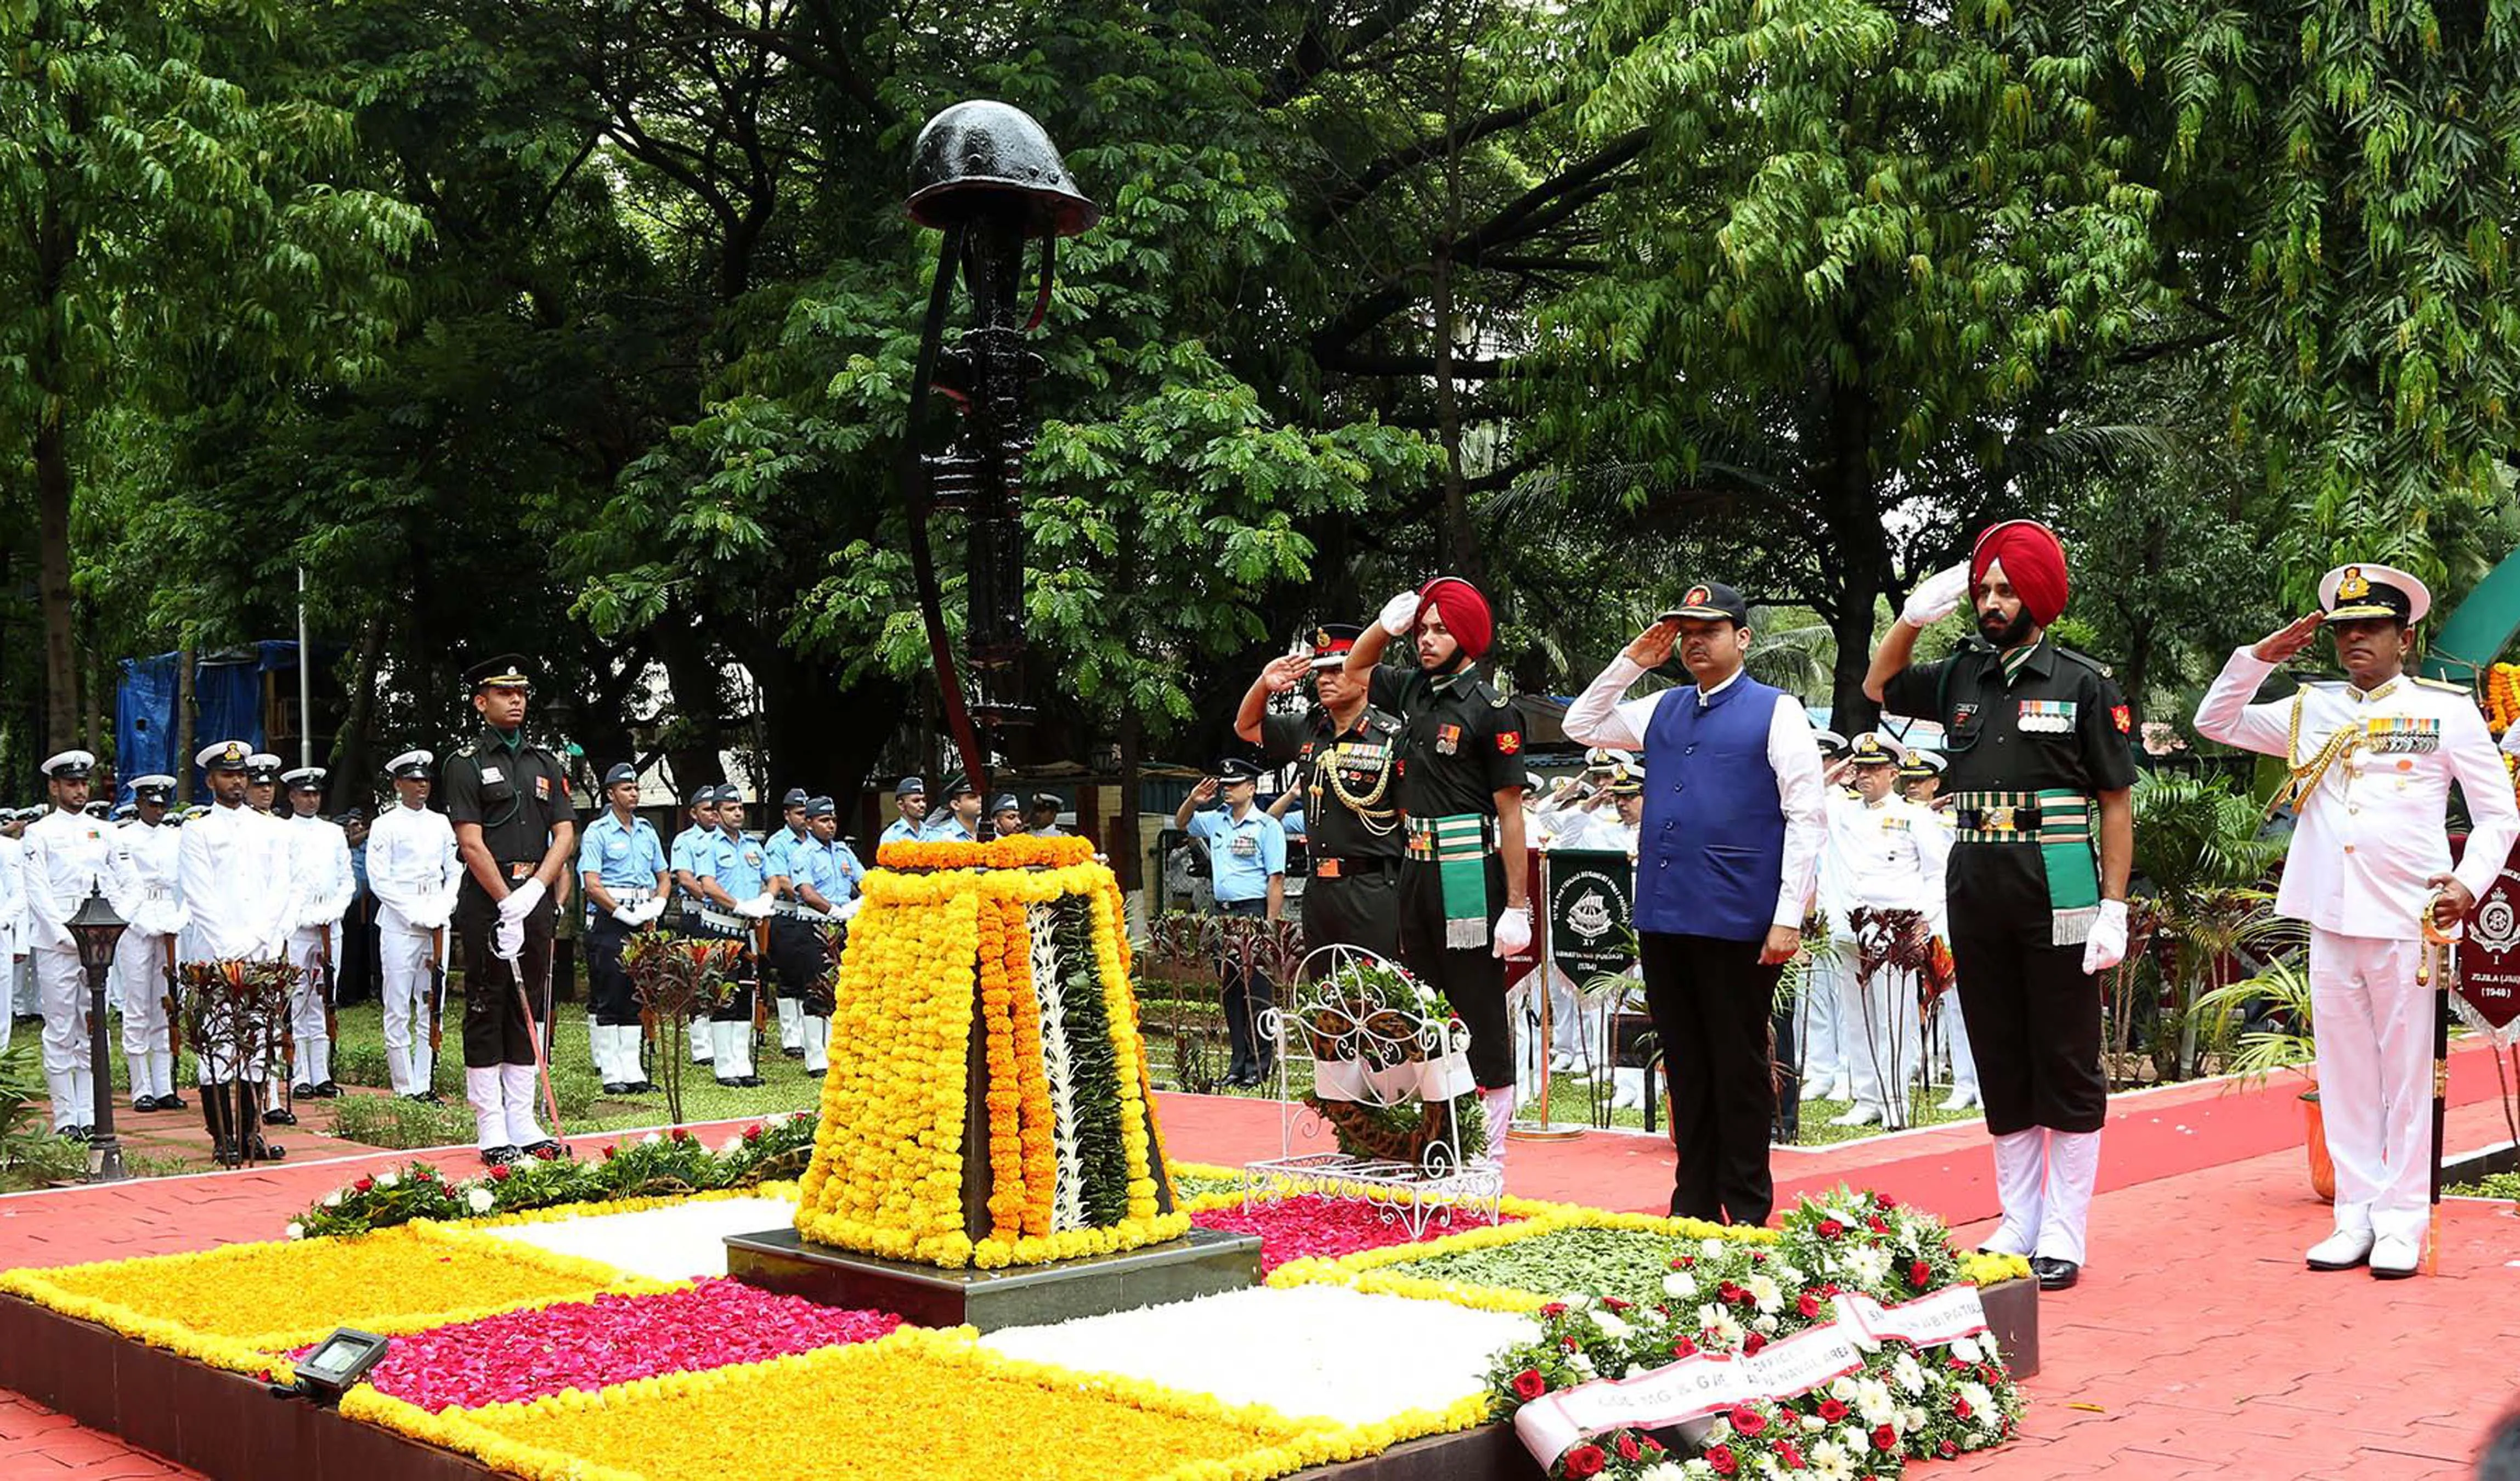 कारगिल विजय दिवस के 20 साल पूरे होने के मौके पर महाराष्ट्र के मुख्यमंत्री देवेंद्र फडणवीस ने शहीद स्मारक पर शहीदों को श्रद्धांजलि दी